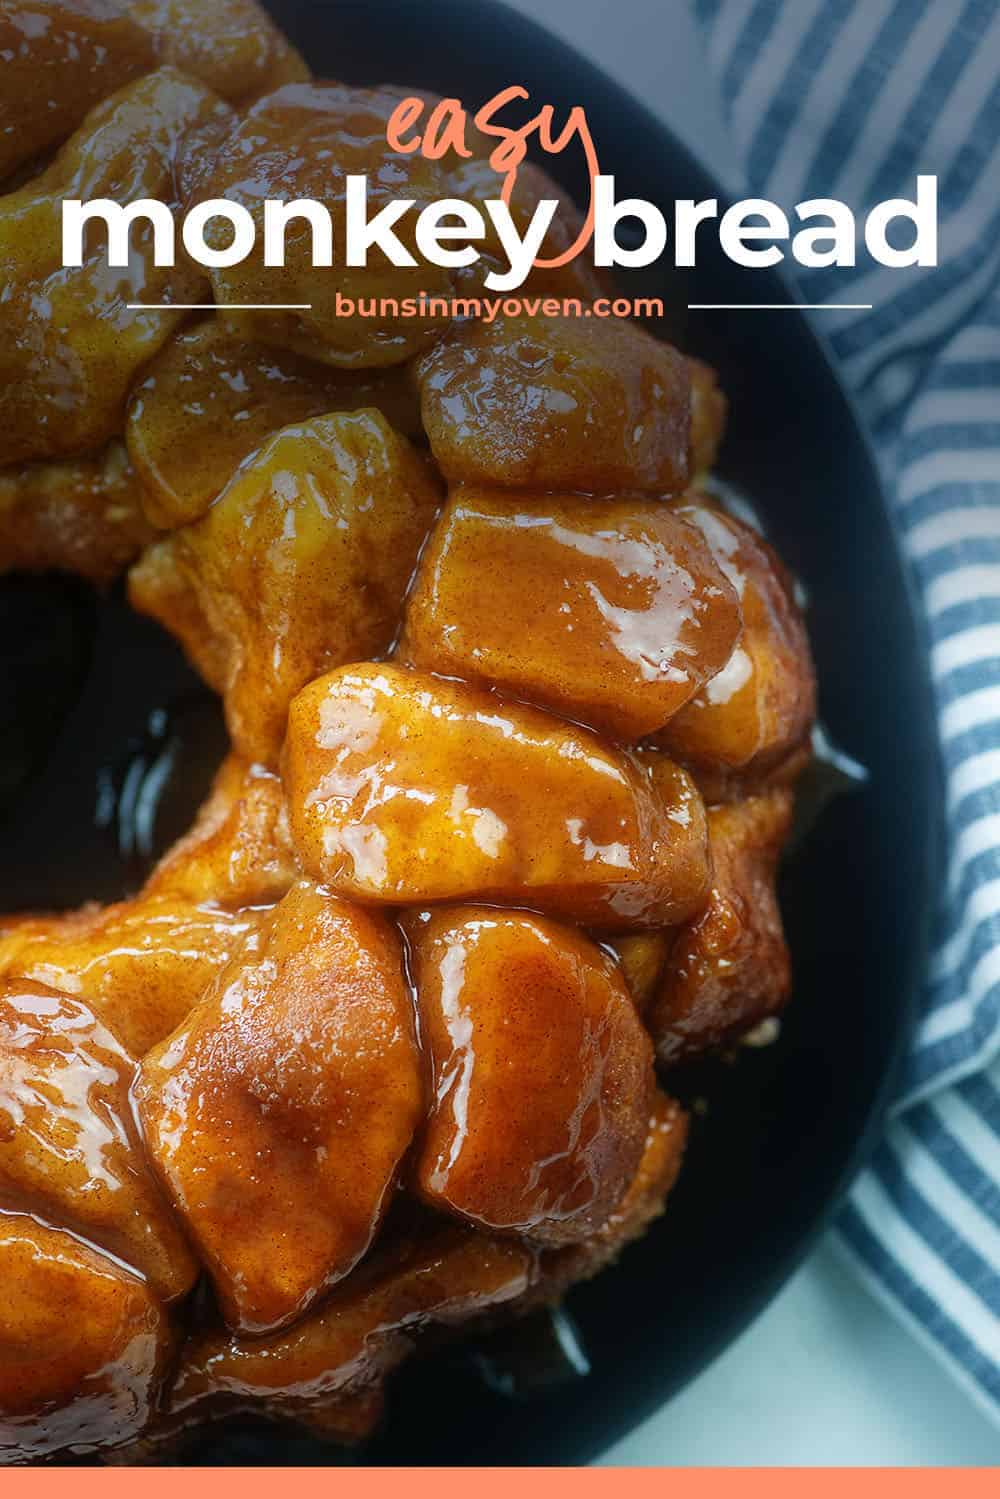 Sunday Morning Treat: Monkey Bread